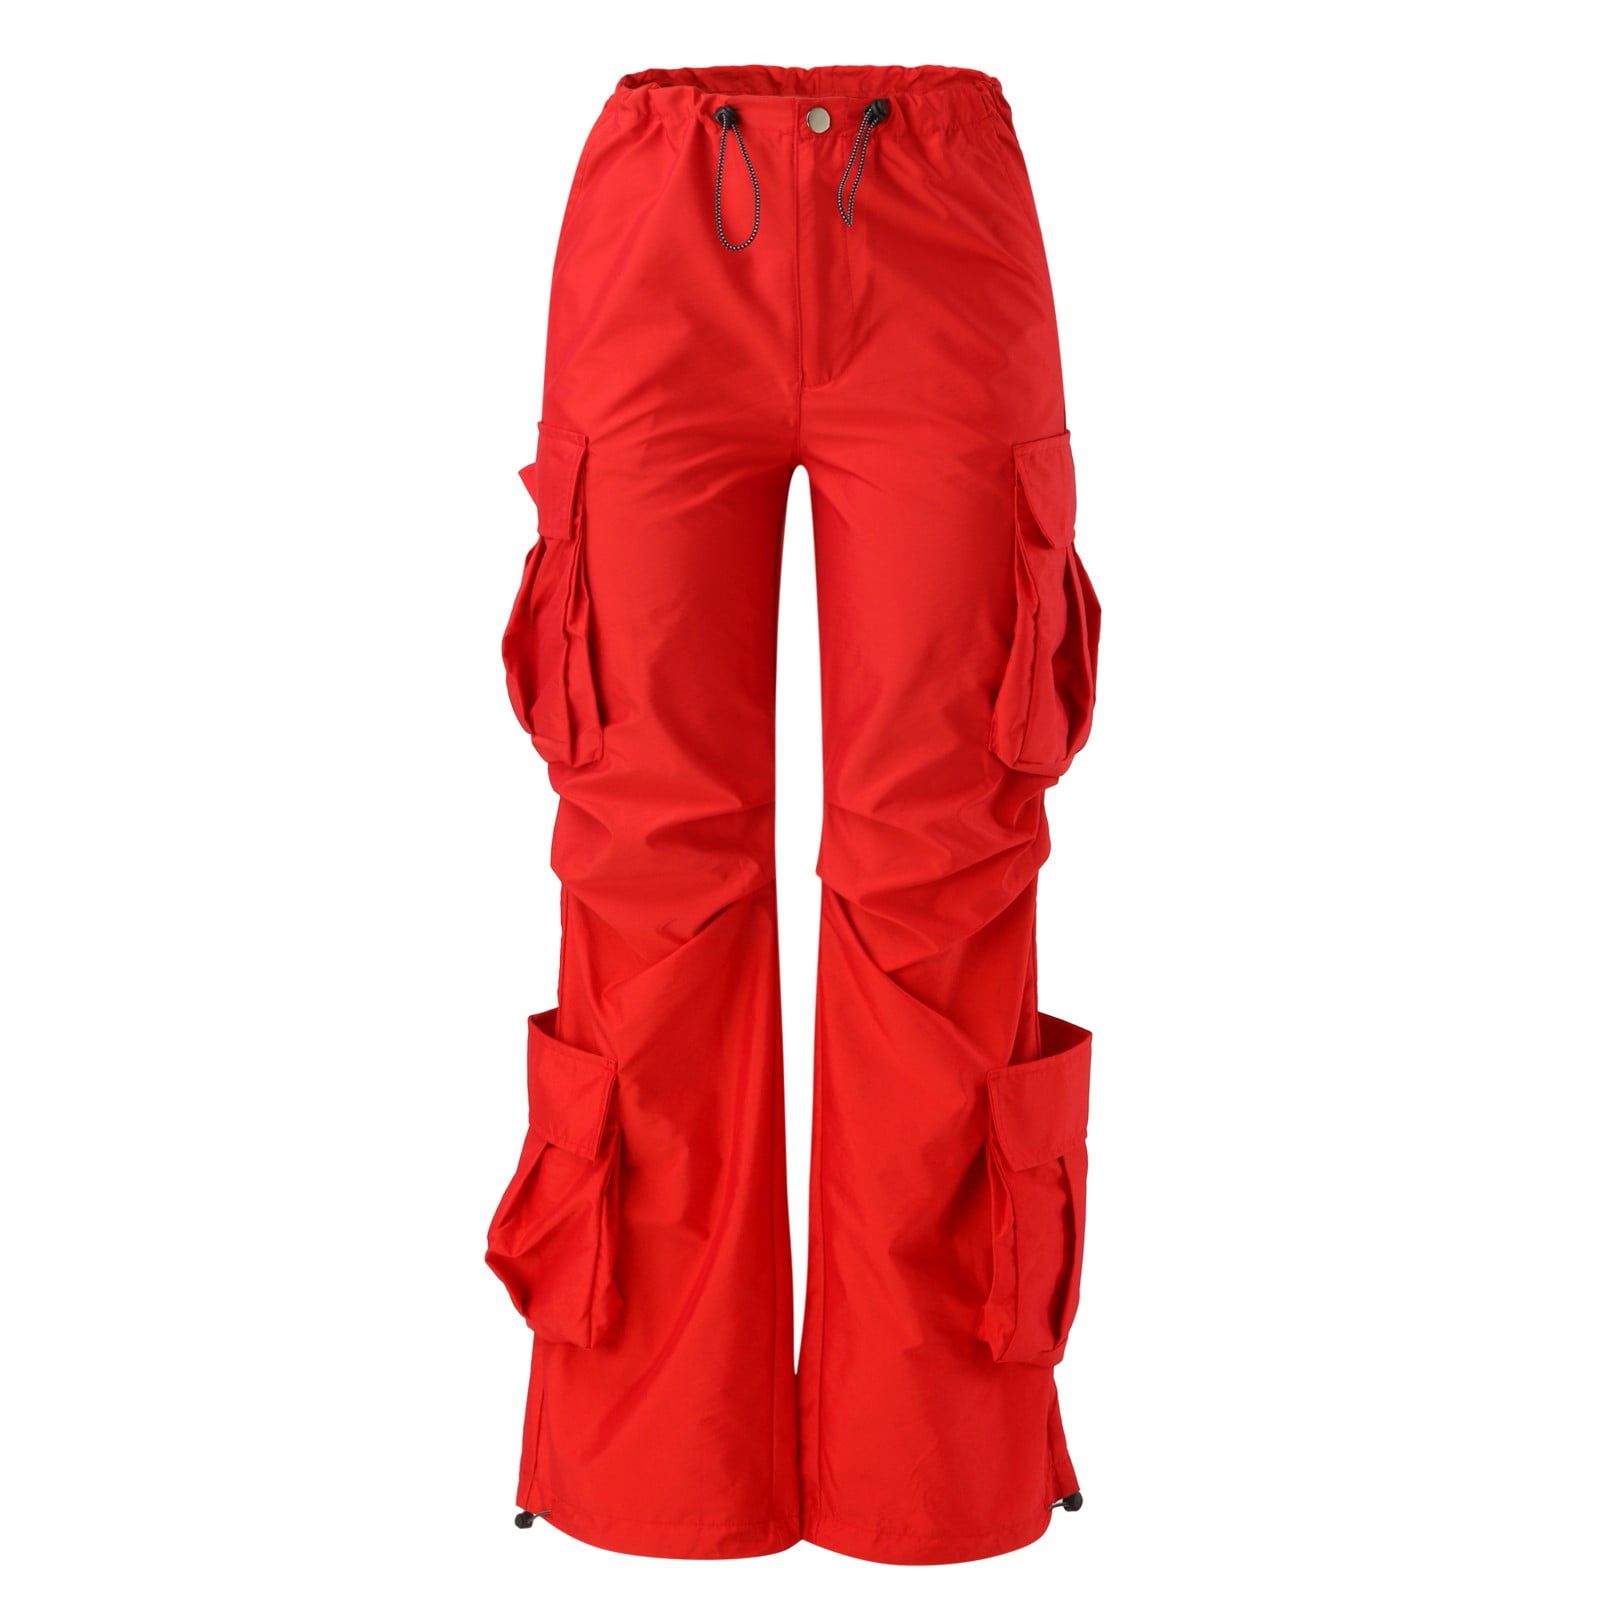 Ploknplq Women's Pants Parachute Pants for Women Cargo Pants